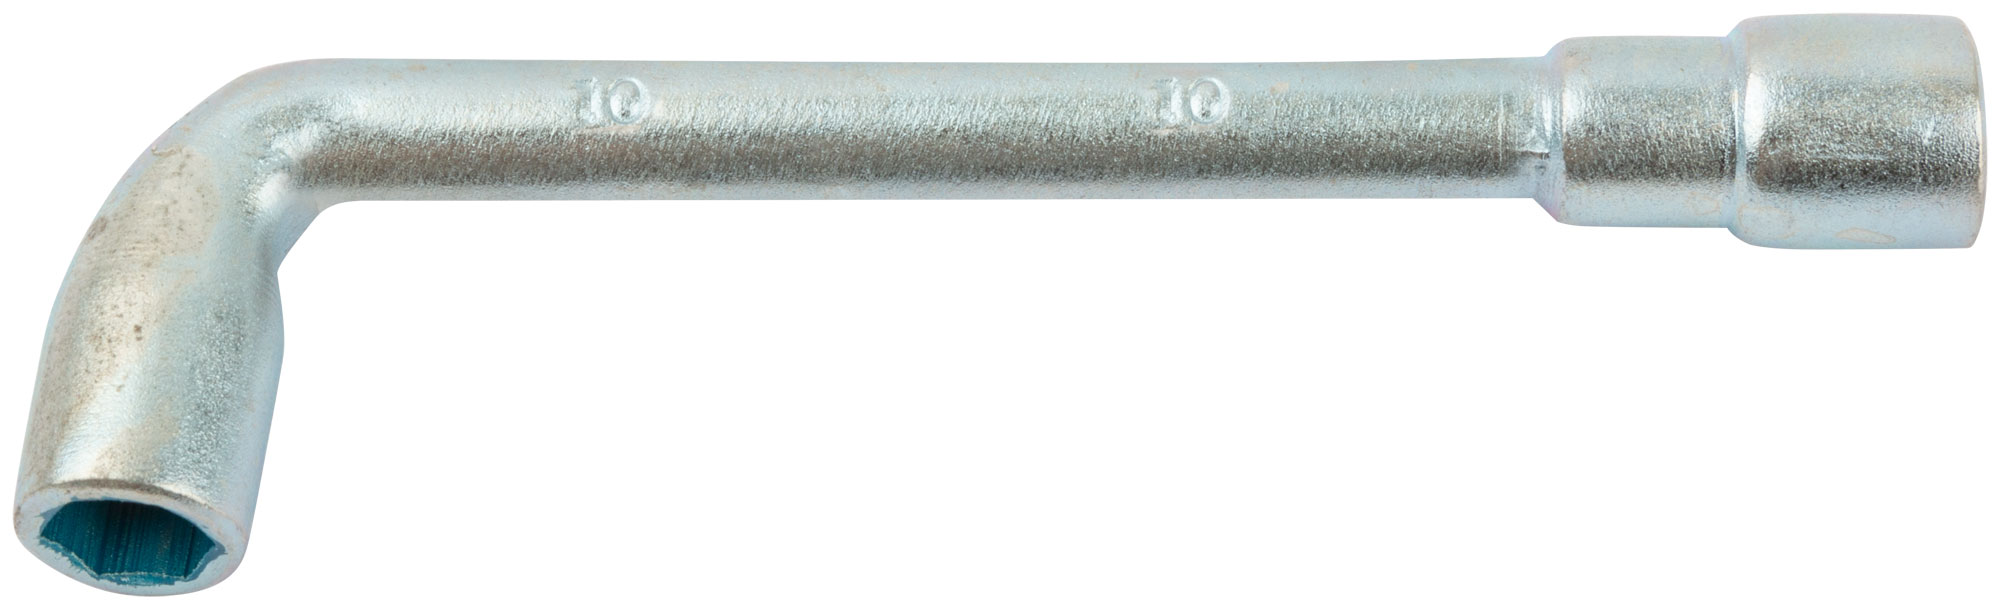 Ключ торцевой L-образный 10 мм. FIT 63010 г образный баллонный ключ helfer